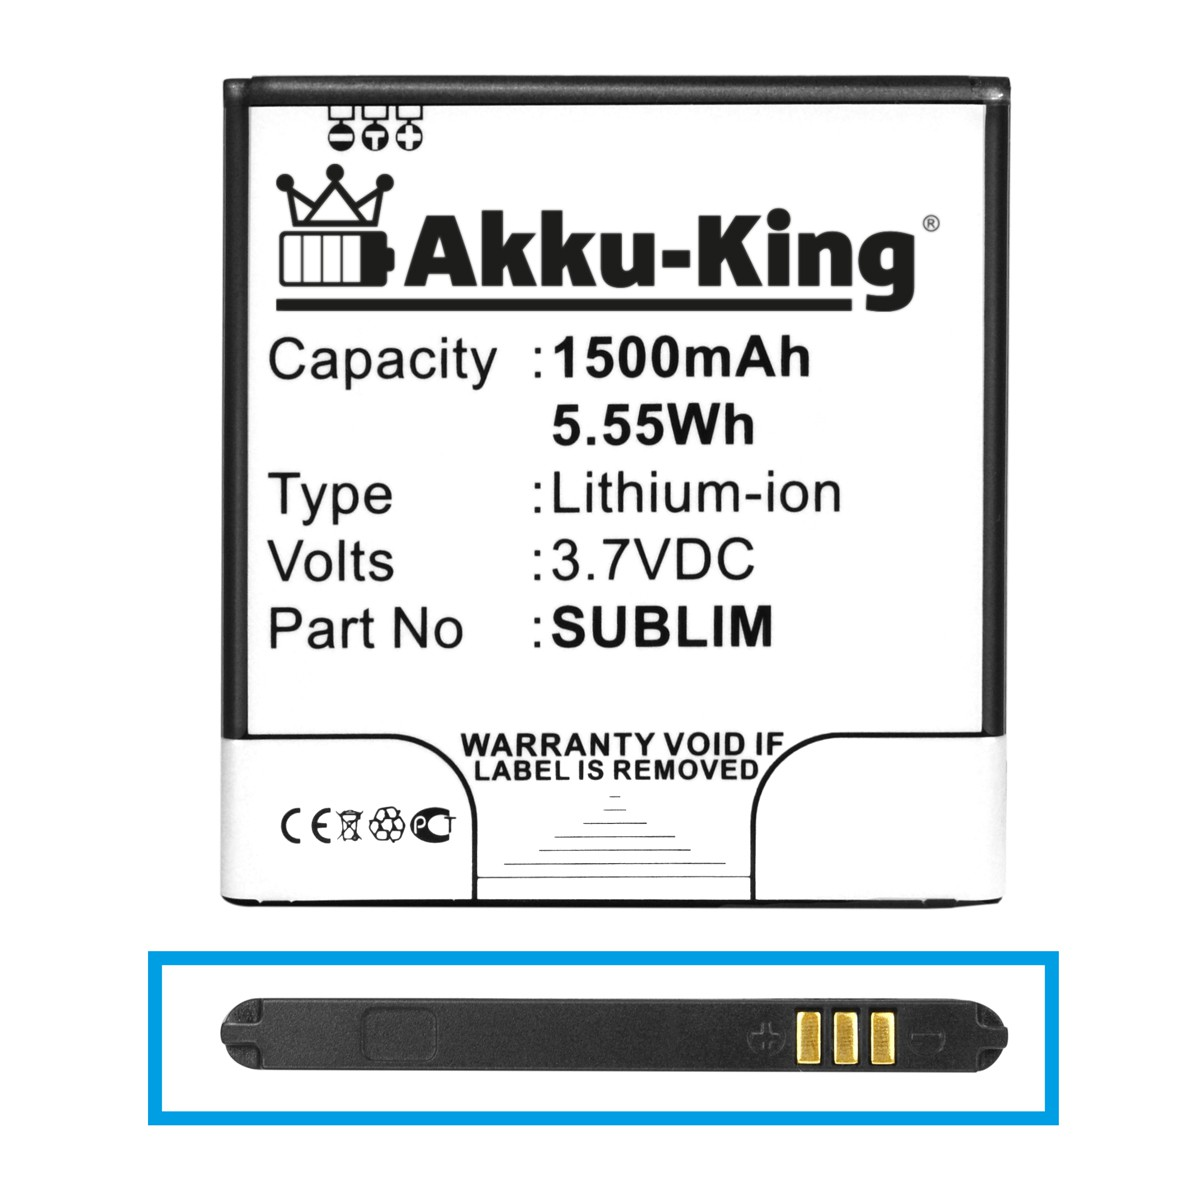 AKKU-KING Akku kompatibel mit Wiko Handy-Akku, Li-Ion 3.7 Volt, N270 1500mAh